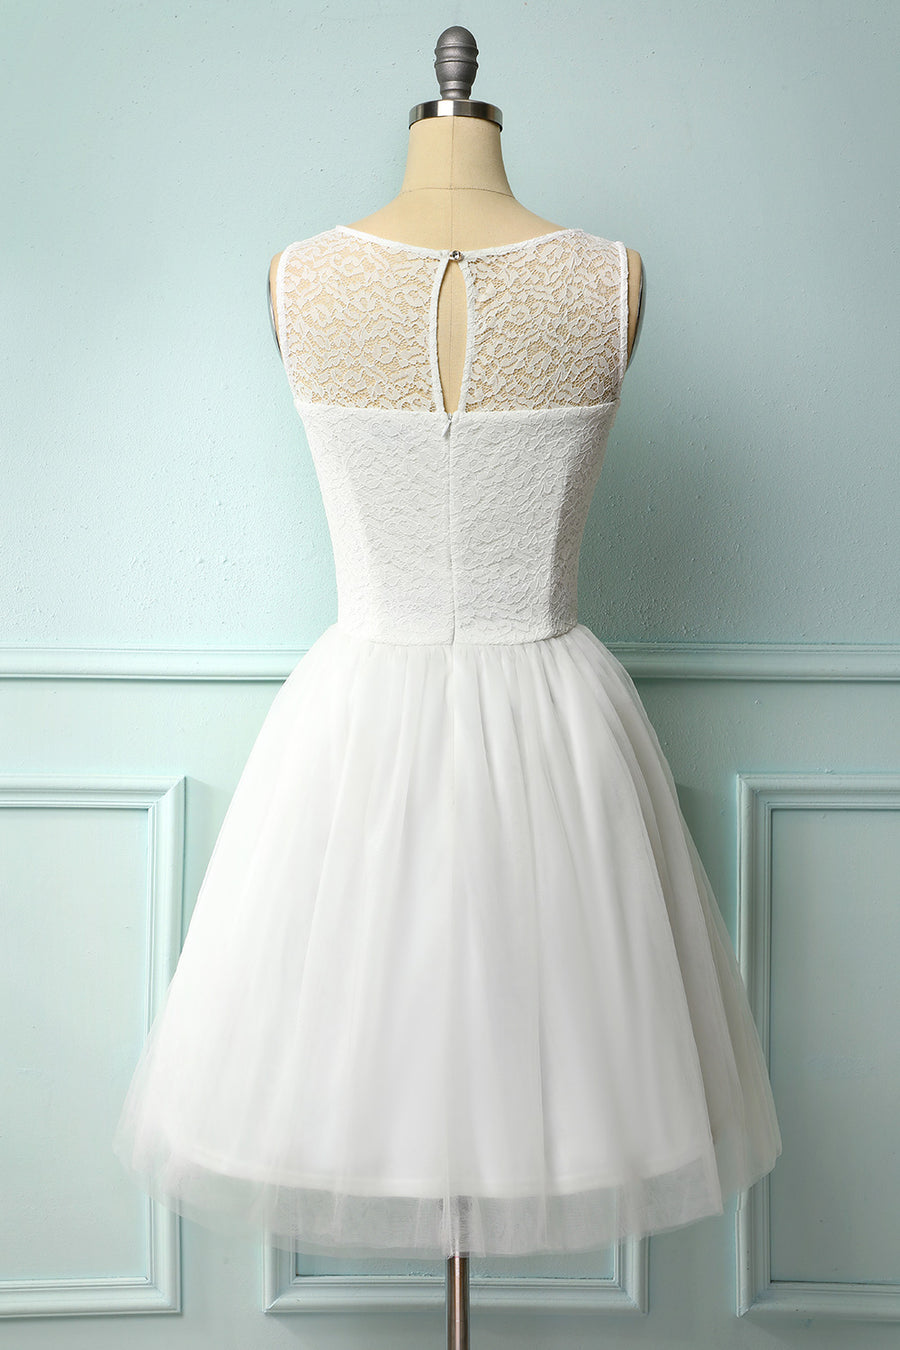 1950s Formal Dresses - Vintage Short & Long 1950s Formal Gowns Online ...